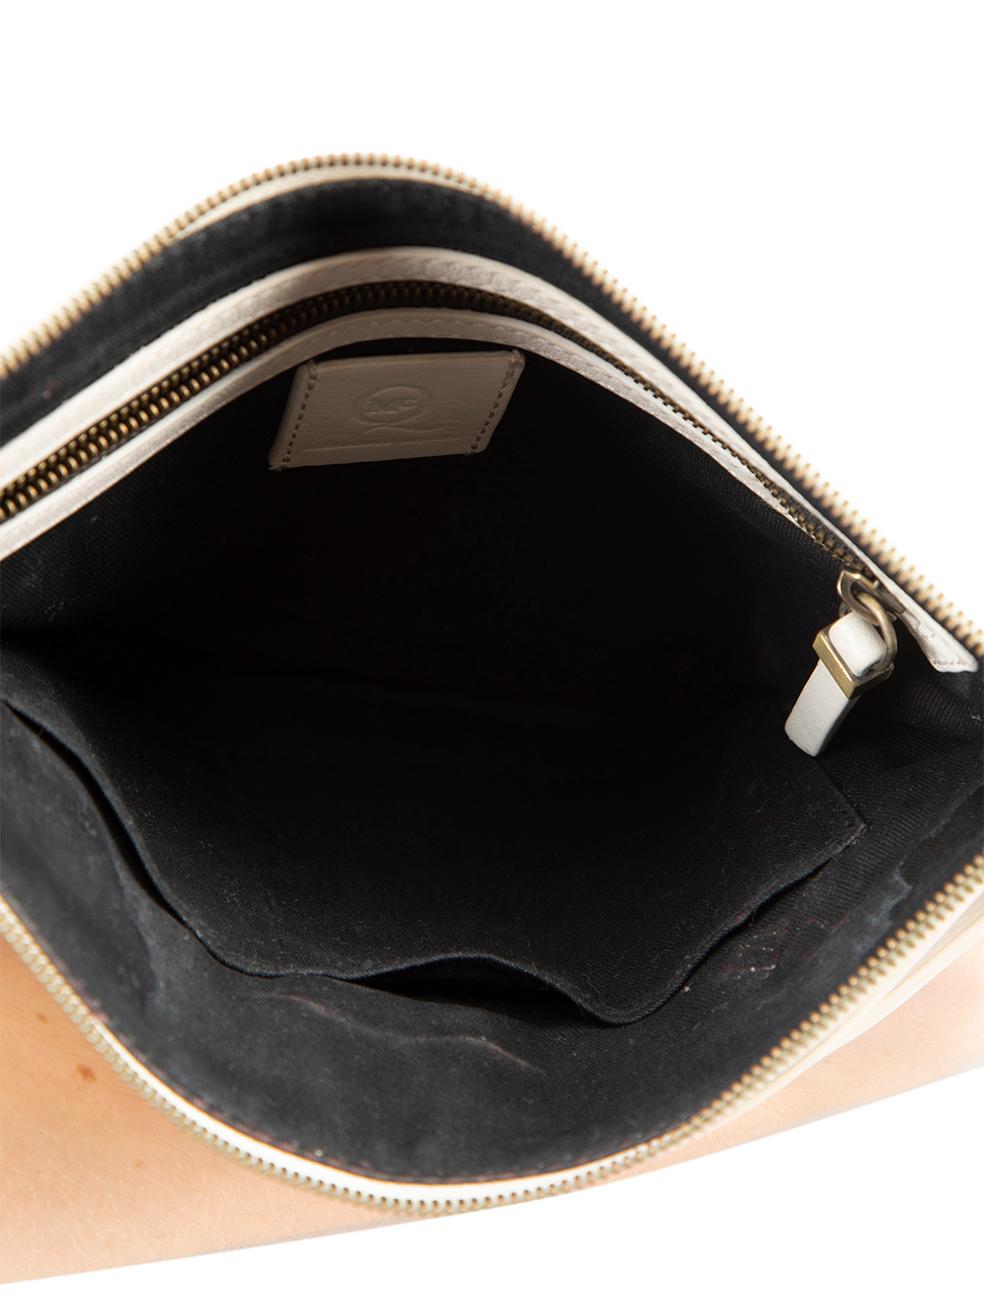 Alexander McQueen Women's McQ Ecru Leather Razor Zipped Clutch For Sale 1